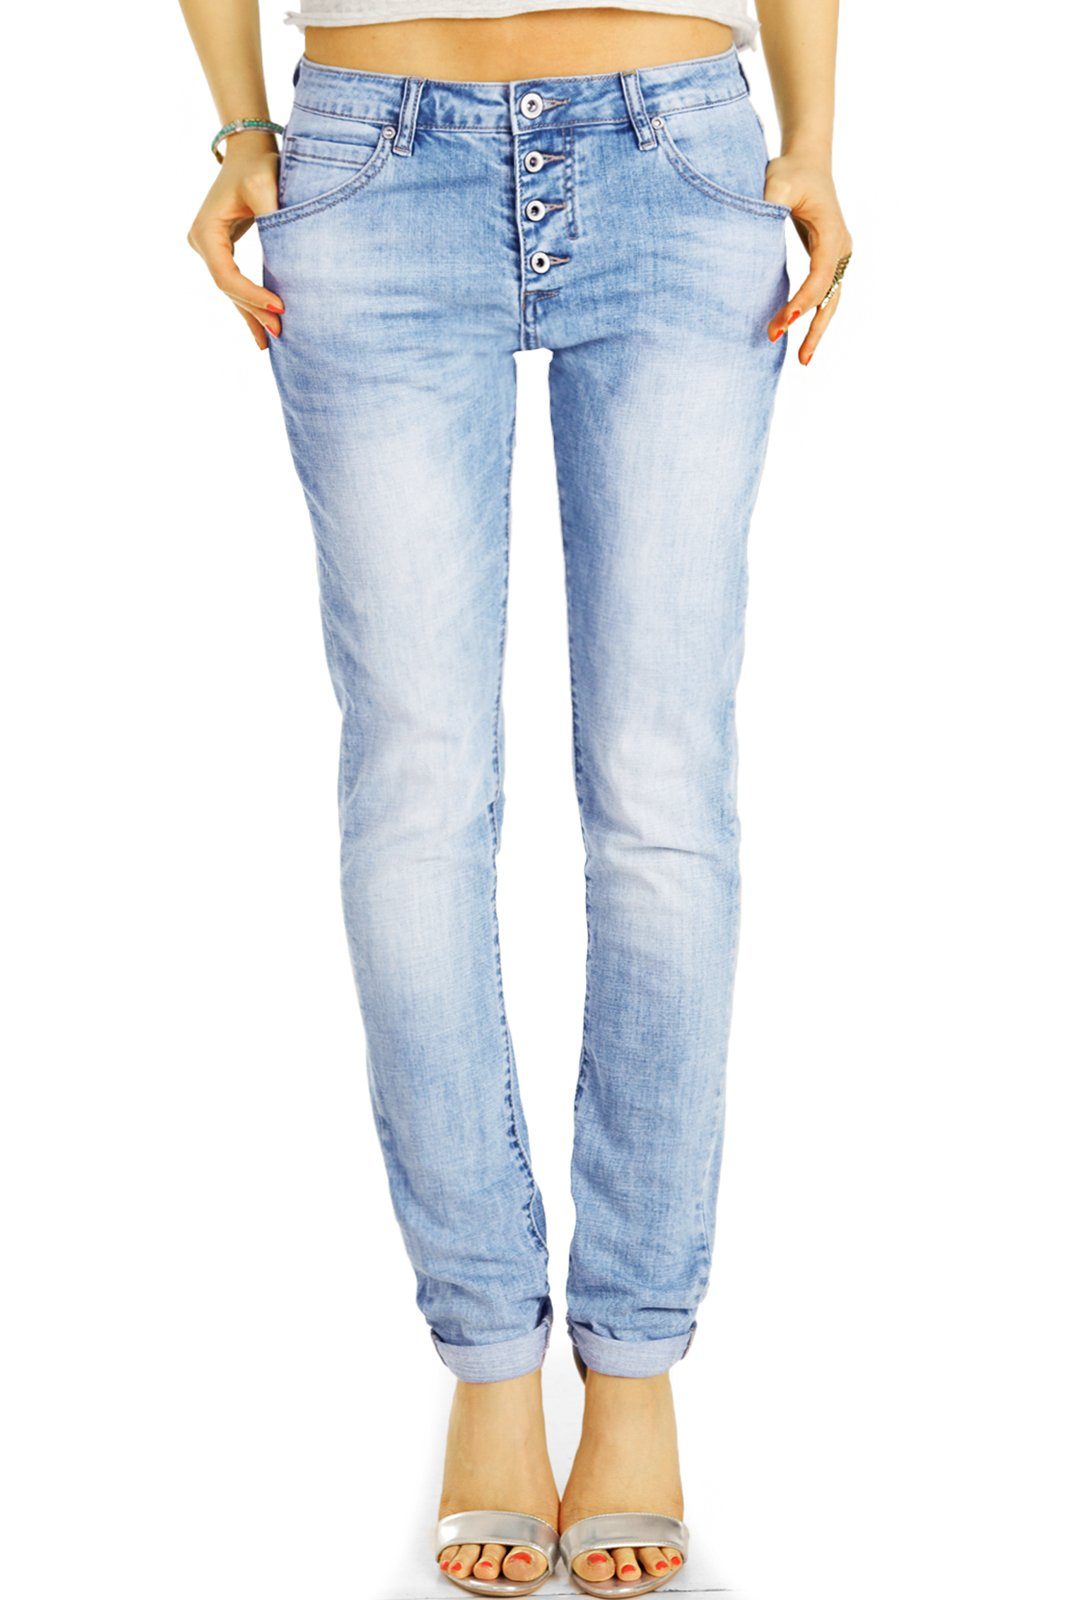 j30L-3 Knopfleiste Waist Jeans Hose Knopfleiste Boyfriend Medium be denim styled Stoffhose mit vordere Damen - -